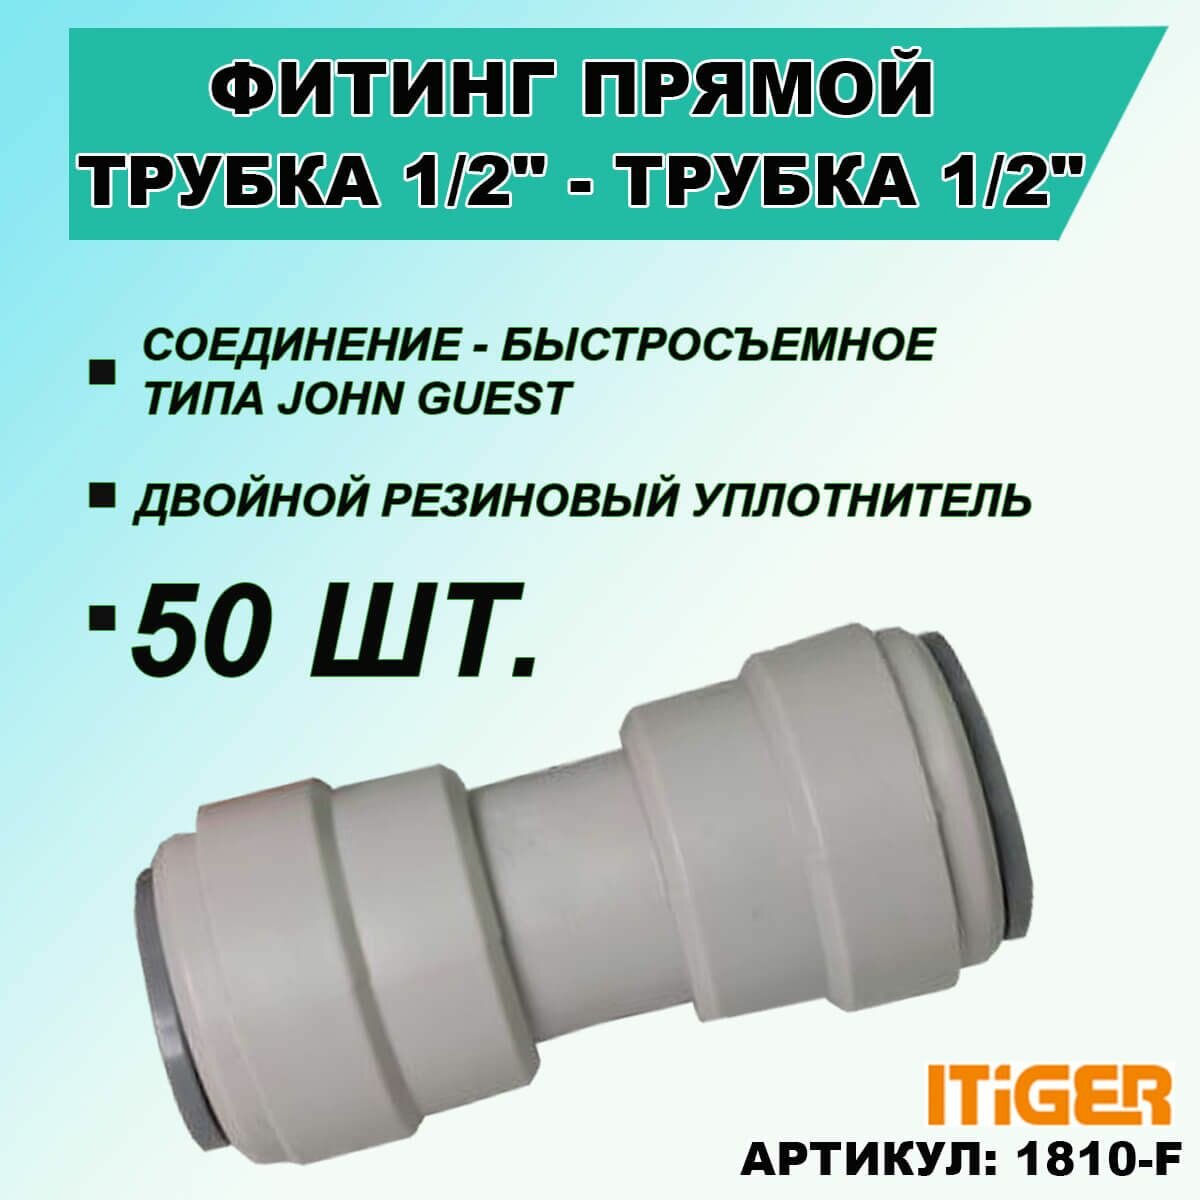 50 шт. Фитинг прямой iTiGer типа John Guest (JG) для фильтра воды, трубка 1/2" - трубка 1/2"